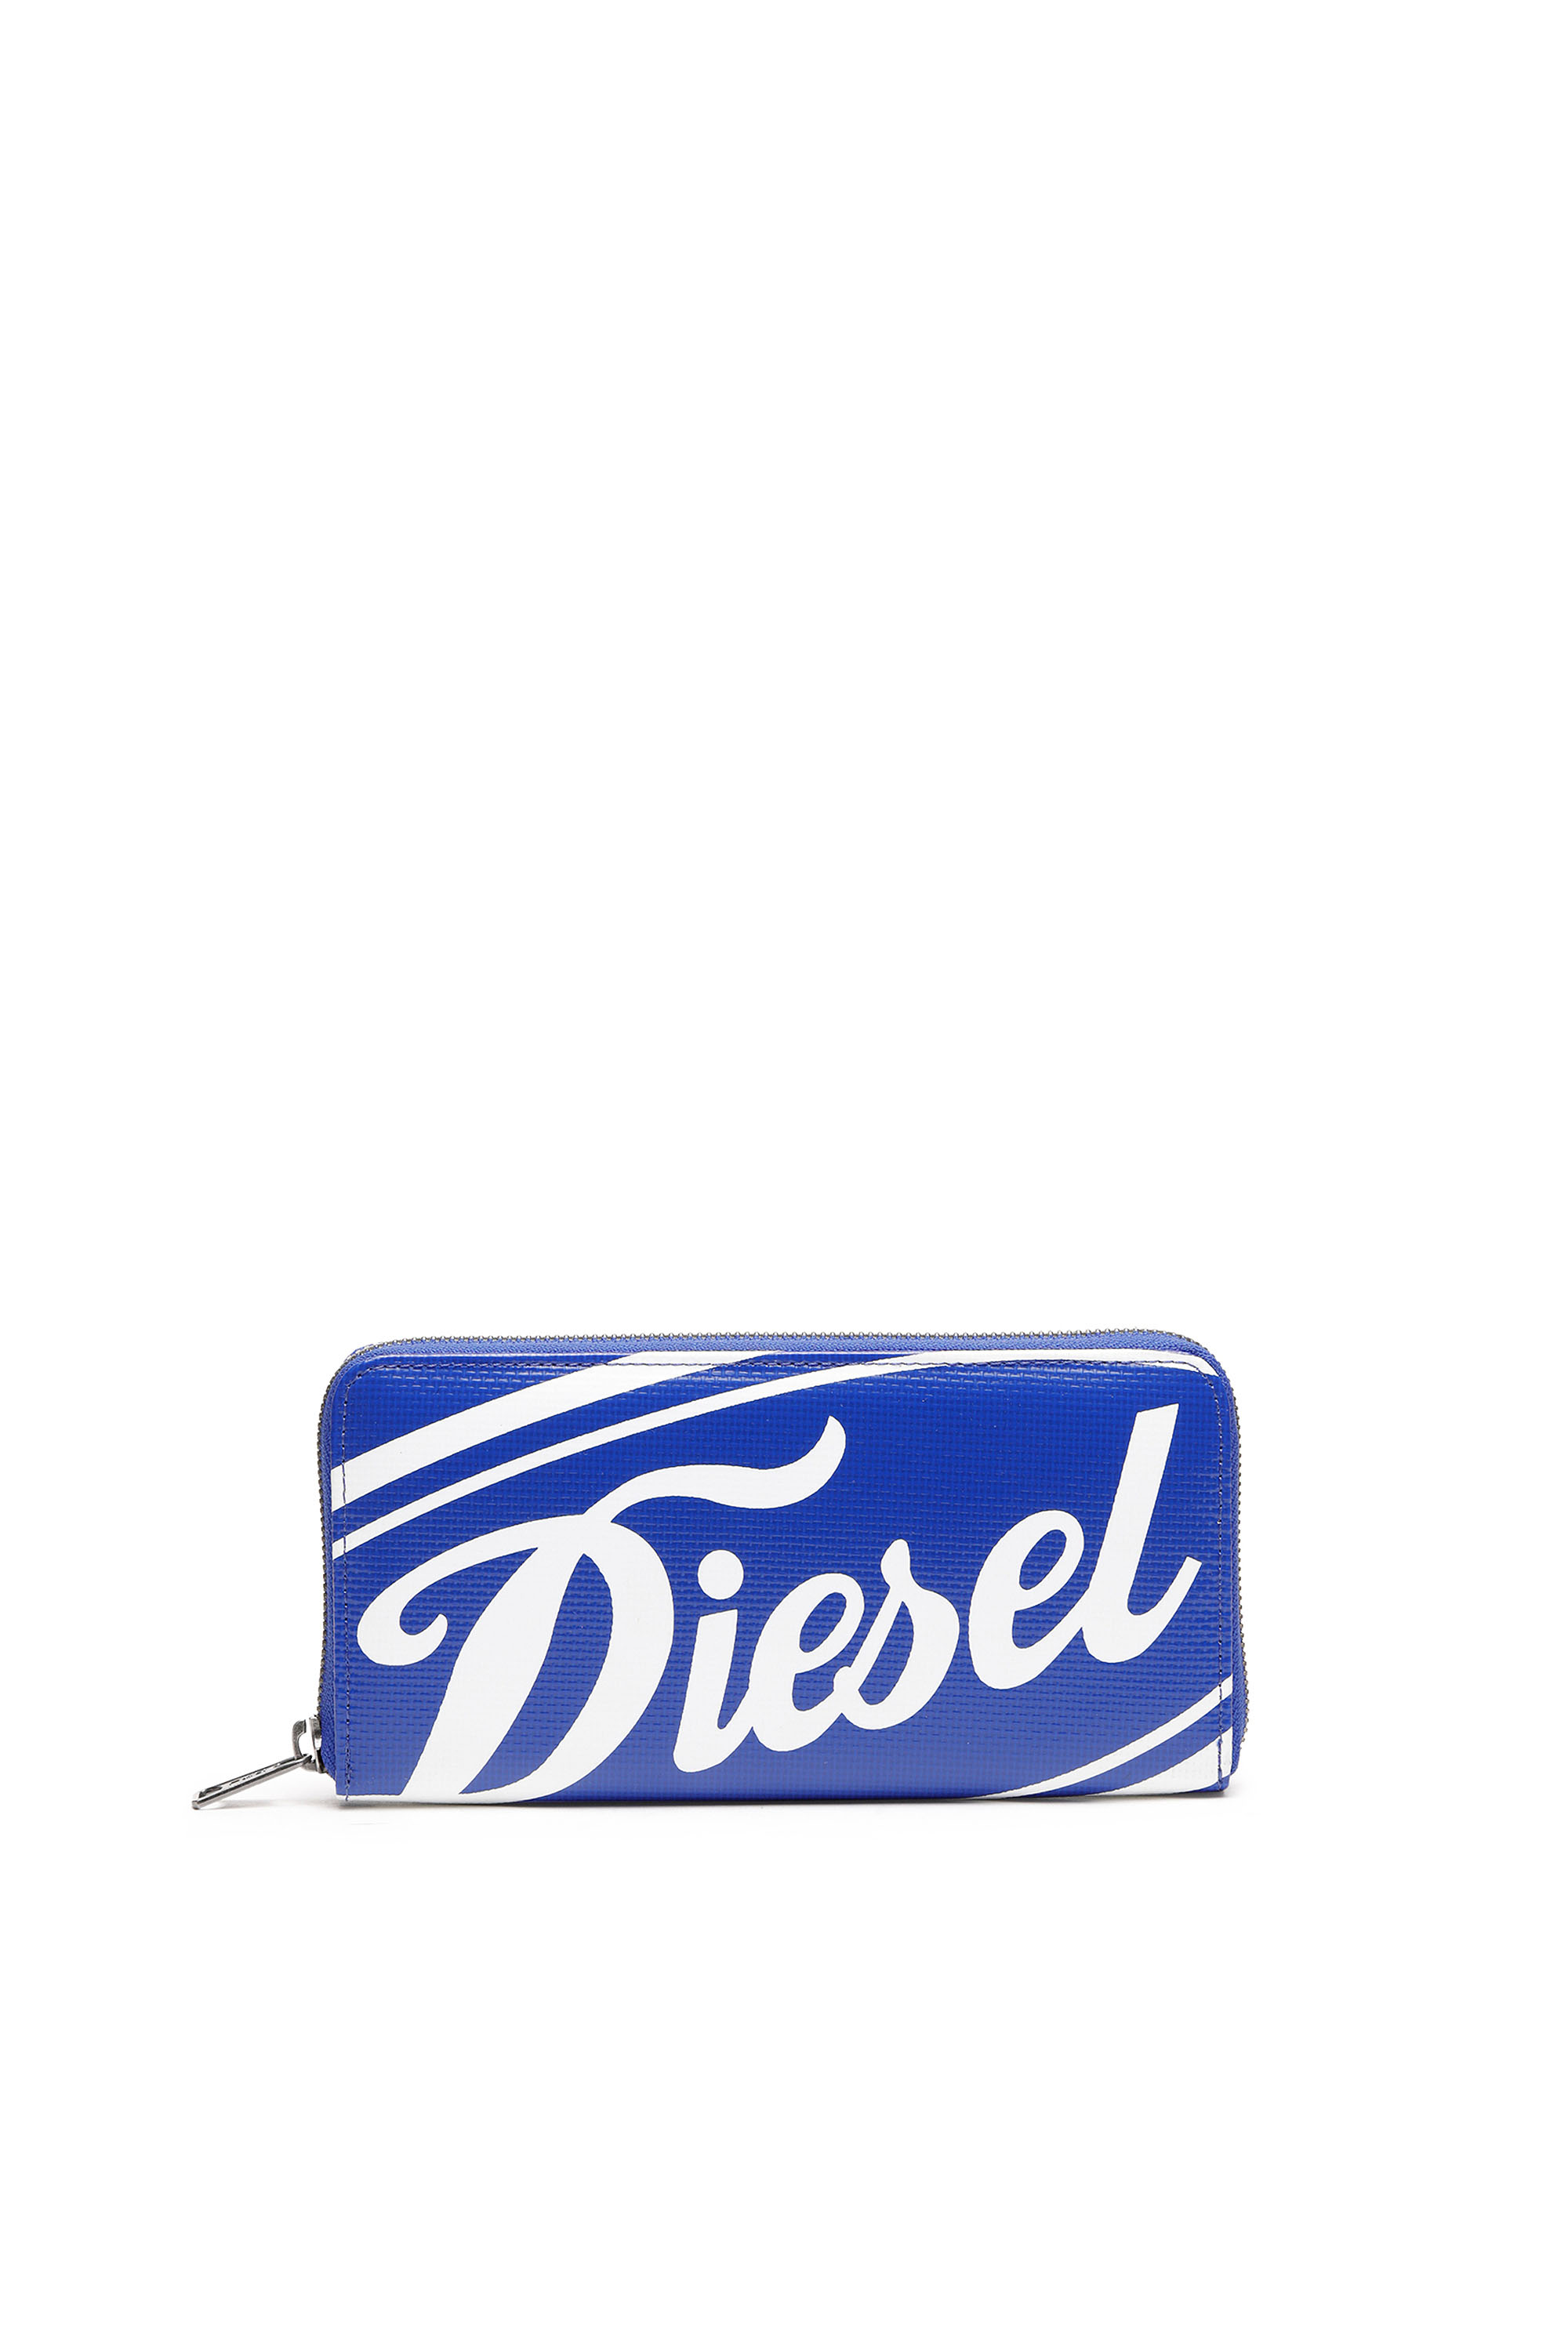 Diesel - 24 ZIP, Blau/Weiss - Image 1